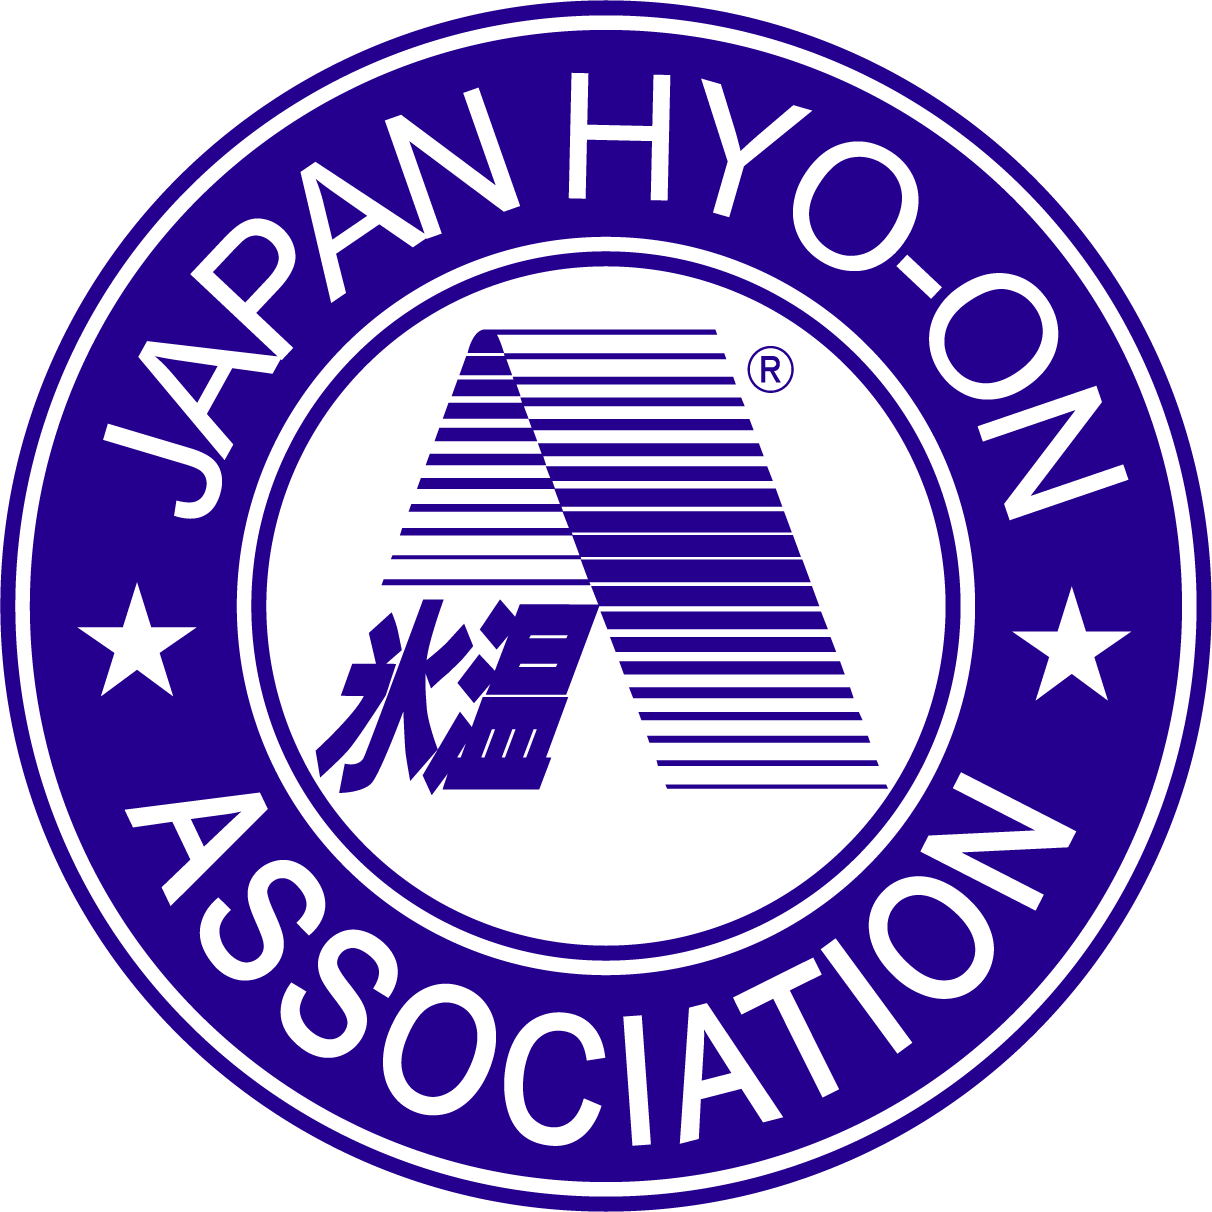 Selo da Associação dos Sakes do Japão